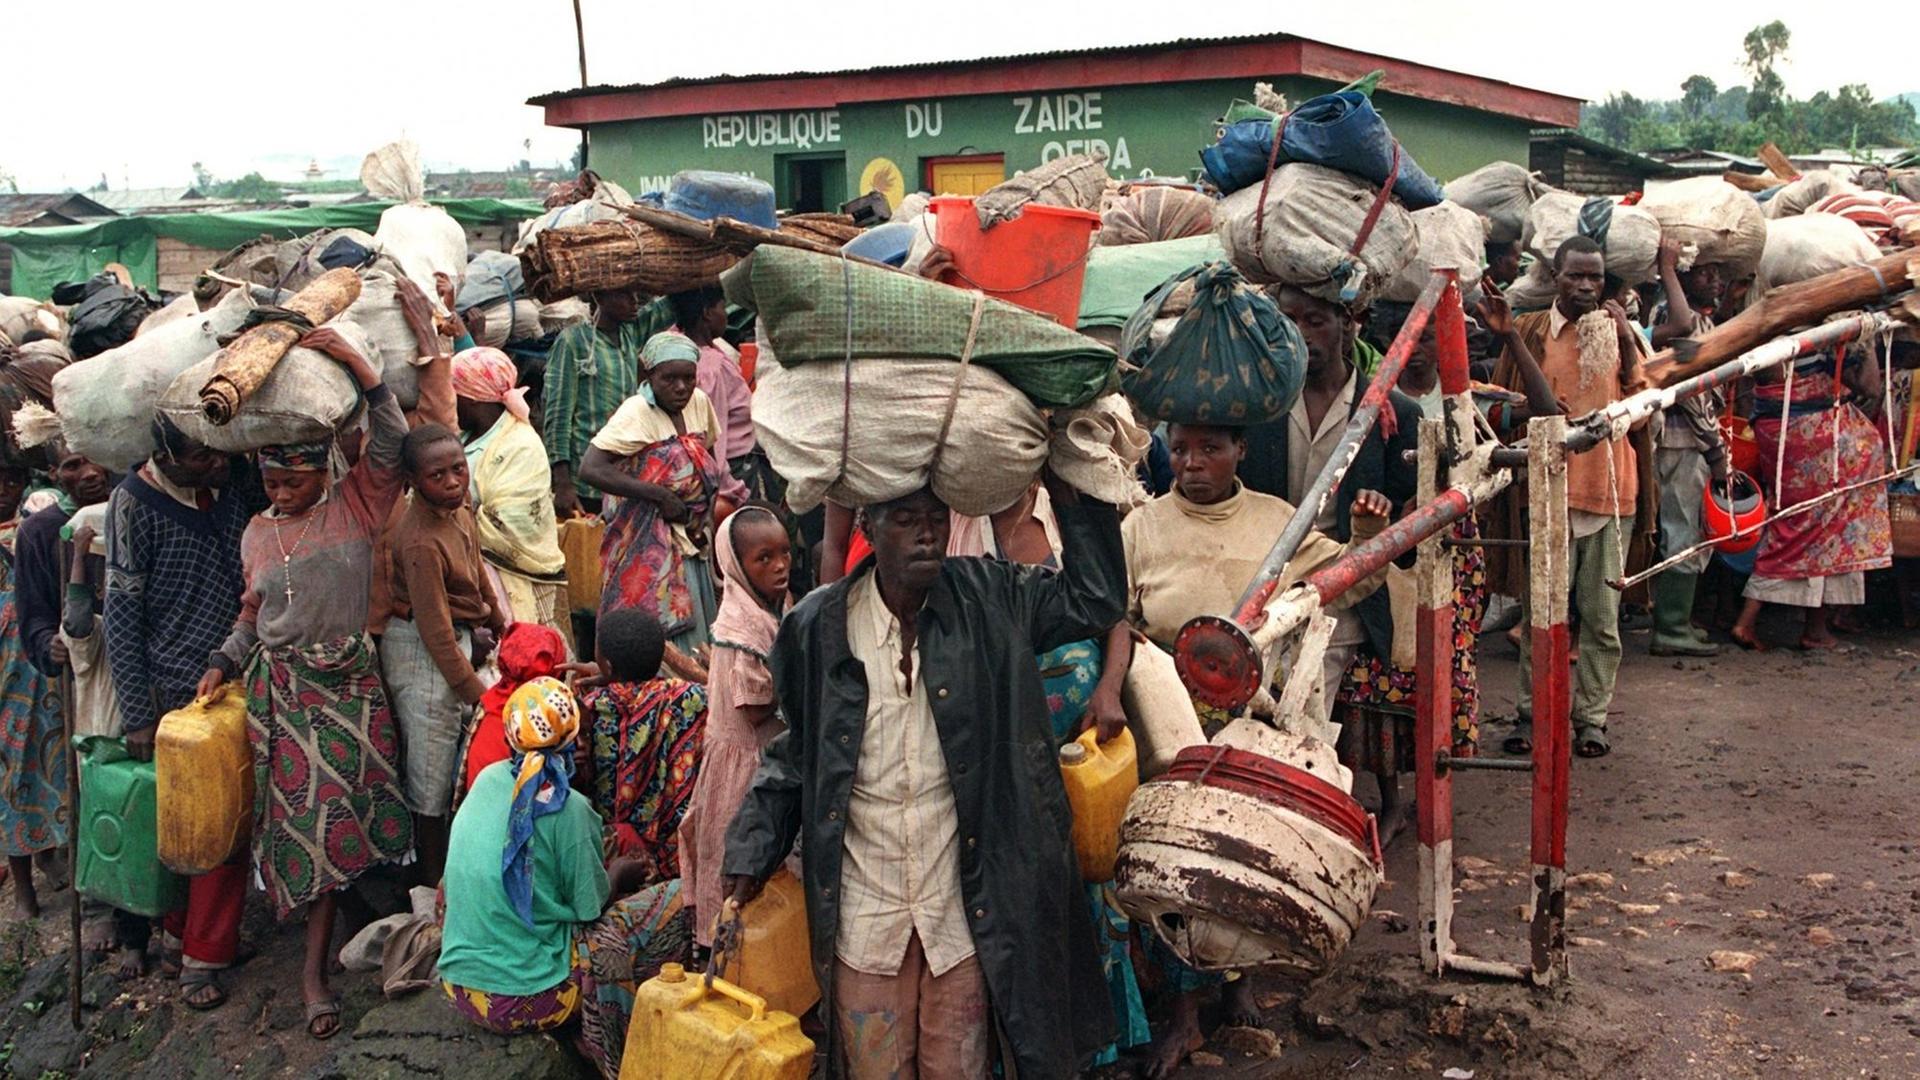 Dicht gedrängt passieren ruandische Flüchtlinge einen Grenzposten an der zairisch-ruandischen Grenze bei Goma, 16.11.1996. Schon mehr als 300000 Flüchtlinge des Hutu-Volkes waren bis Samstag (16.11.) von Ost-Zaire aus in ihre Heimat zurückgekehrt.